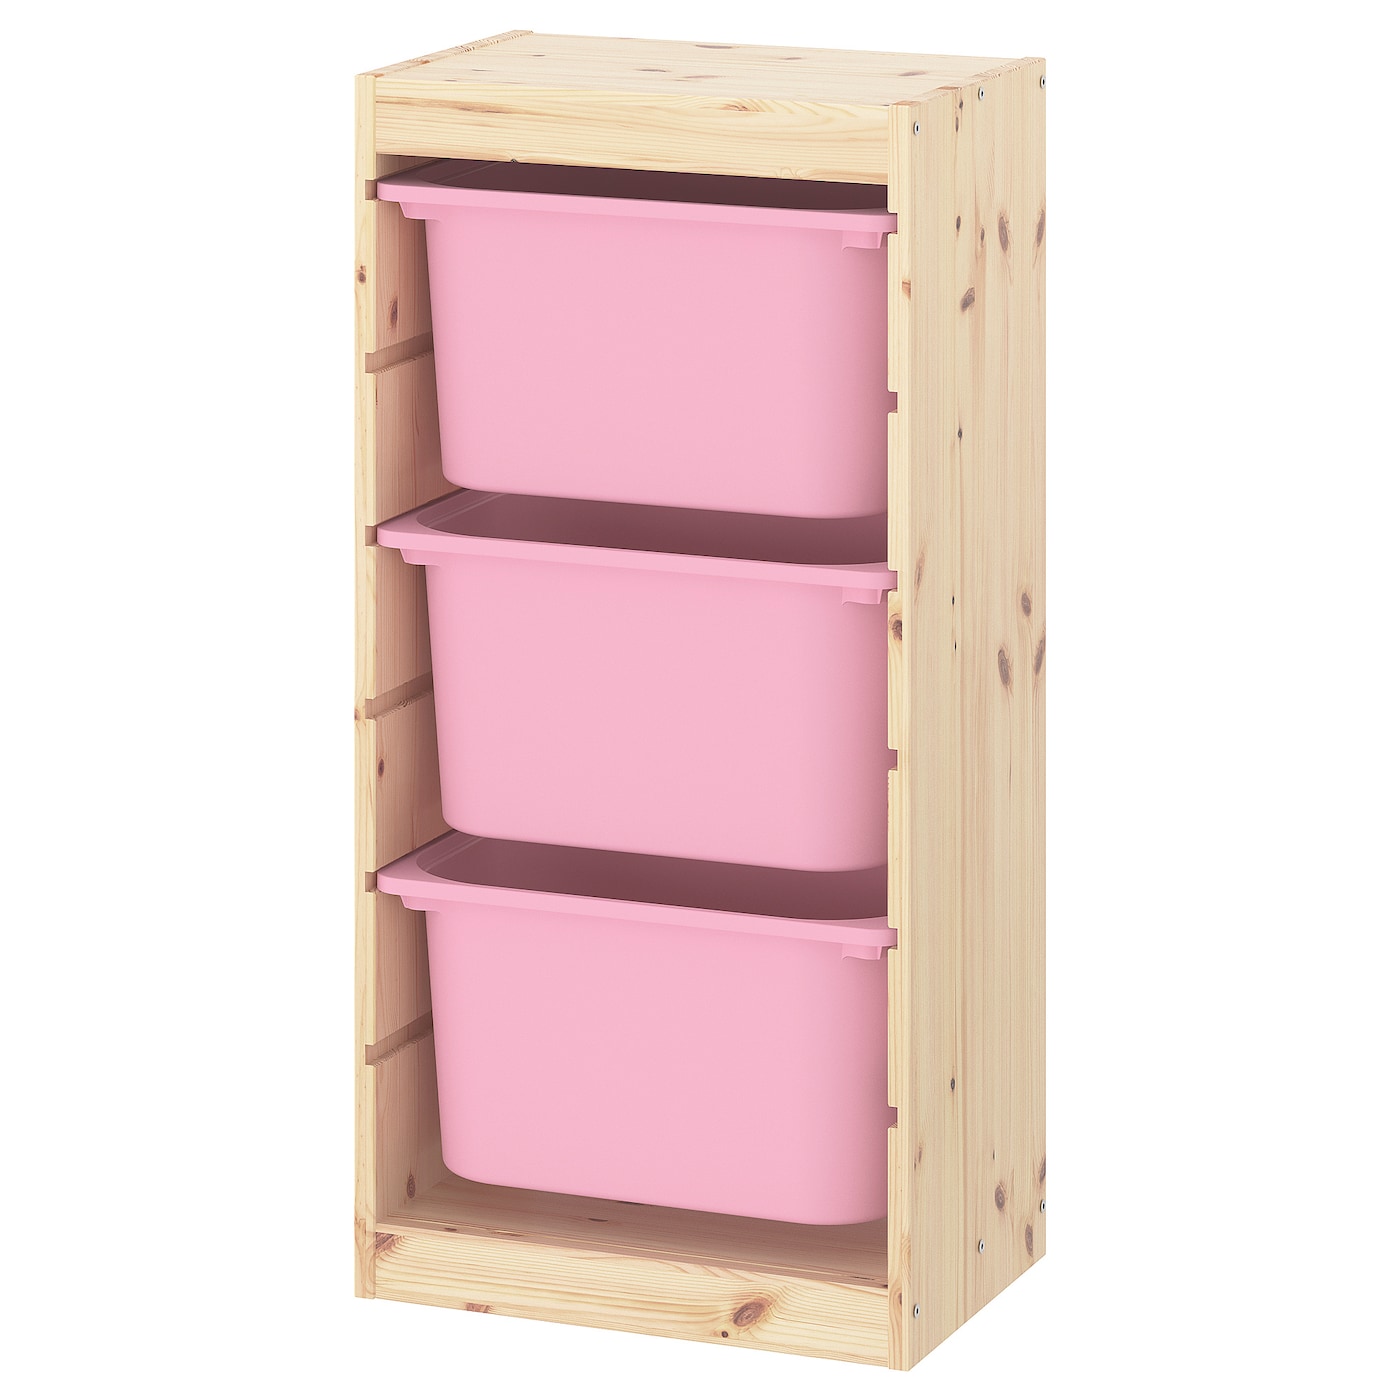 Стеллаж - IKEA TROFAST, 44х30х91 см, сосна/розовый, ТРУФАСТ ИКЕА